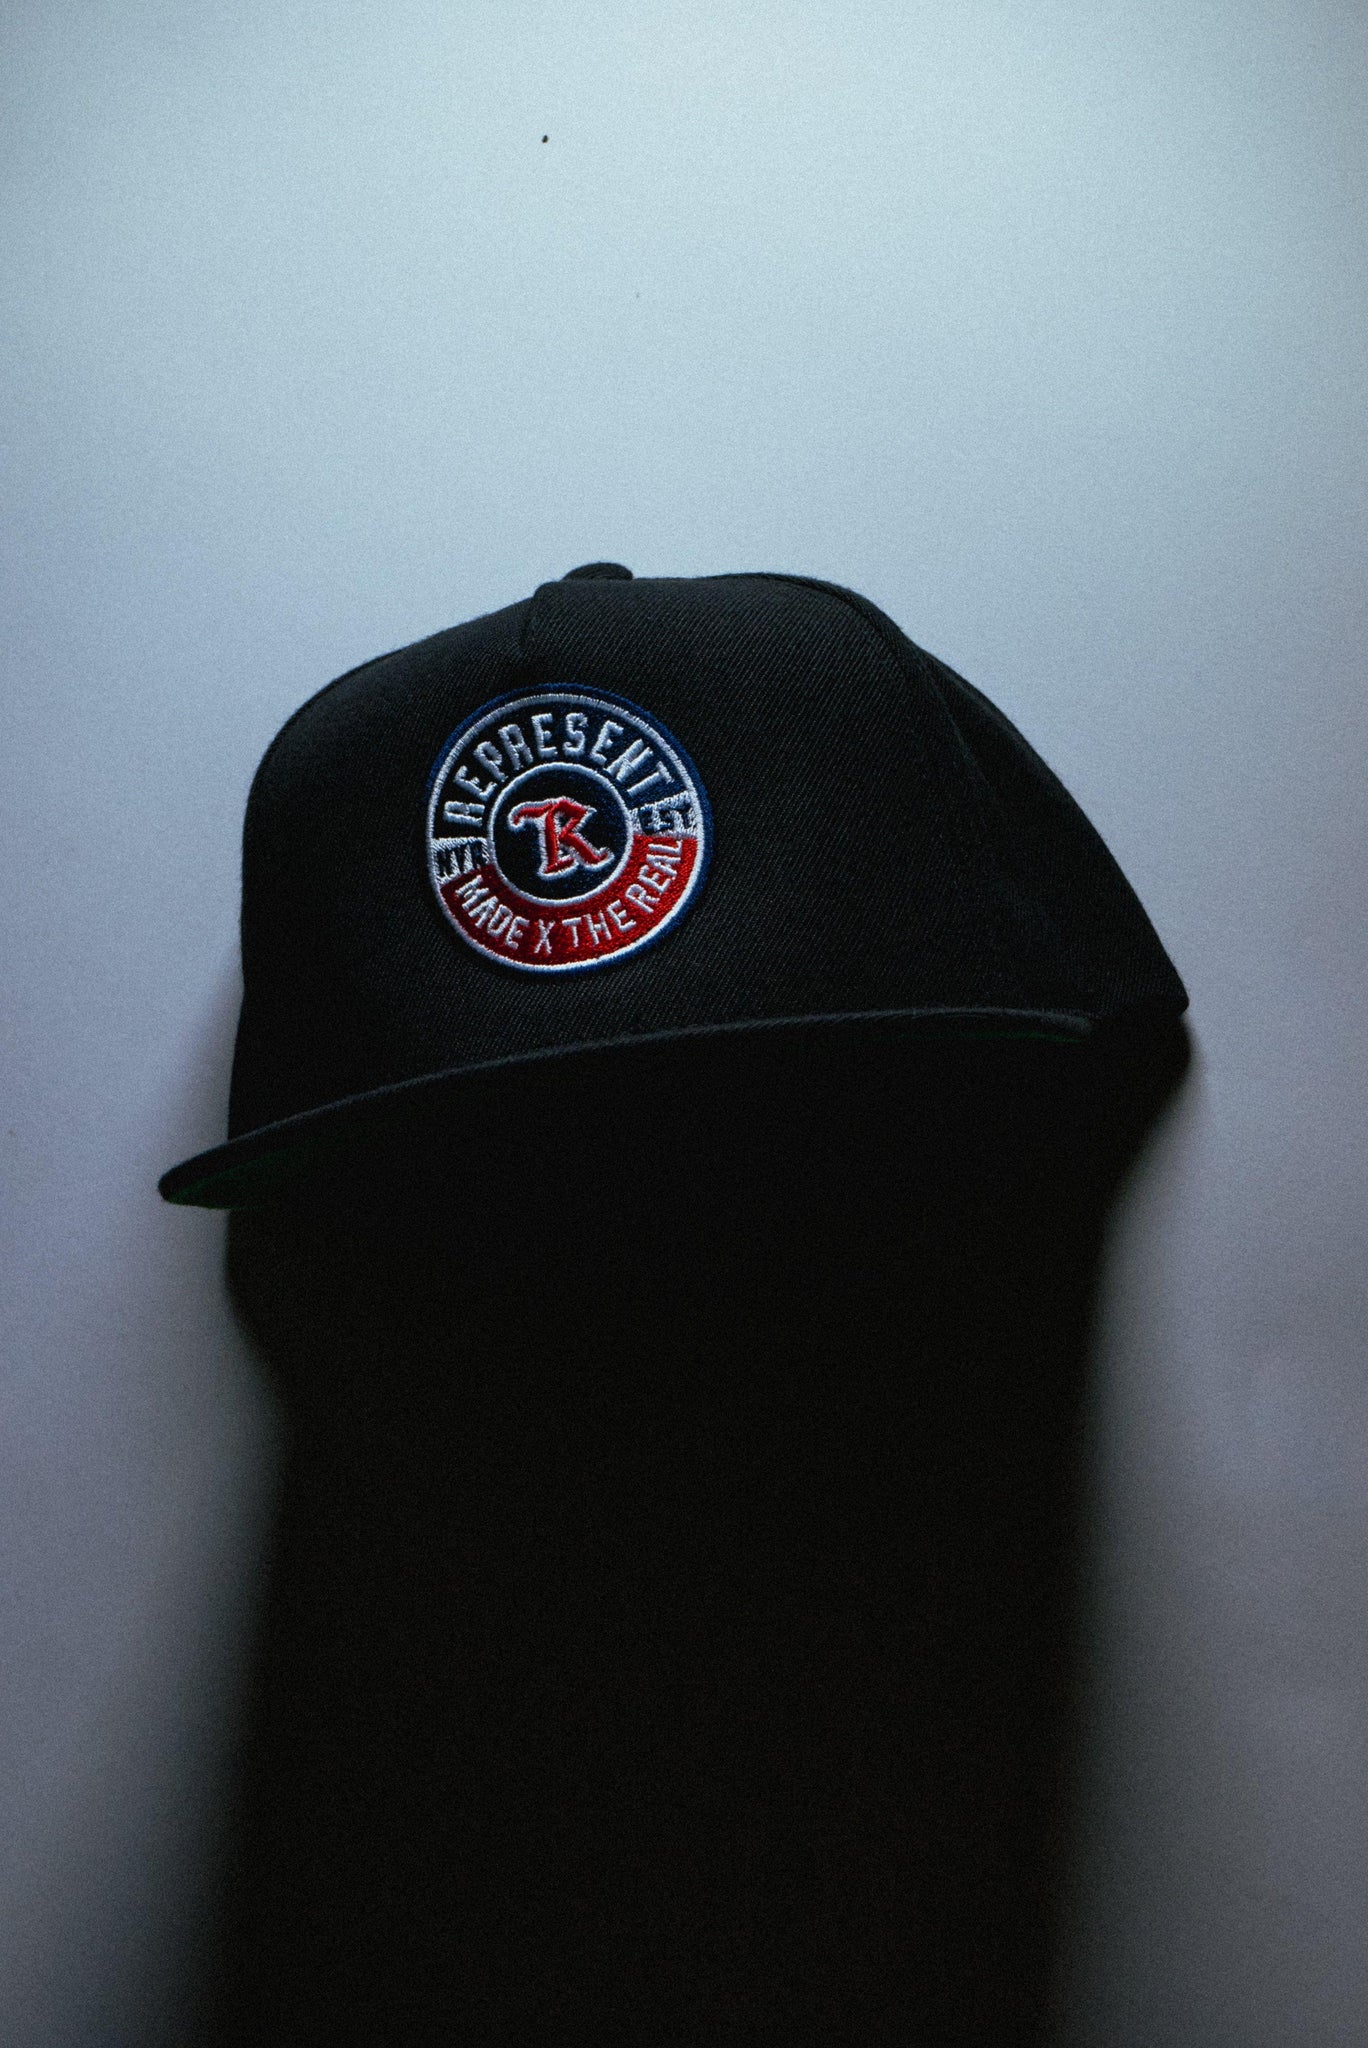 Represent Ltd.™ 'Rep Supply Co. Hats' - Represent Ltd.™